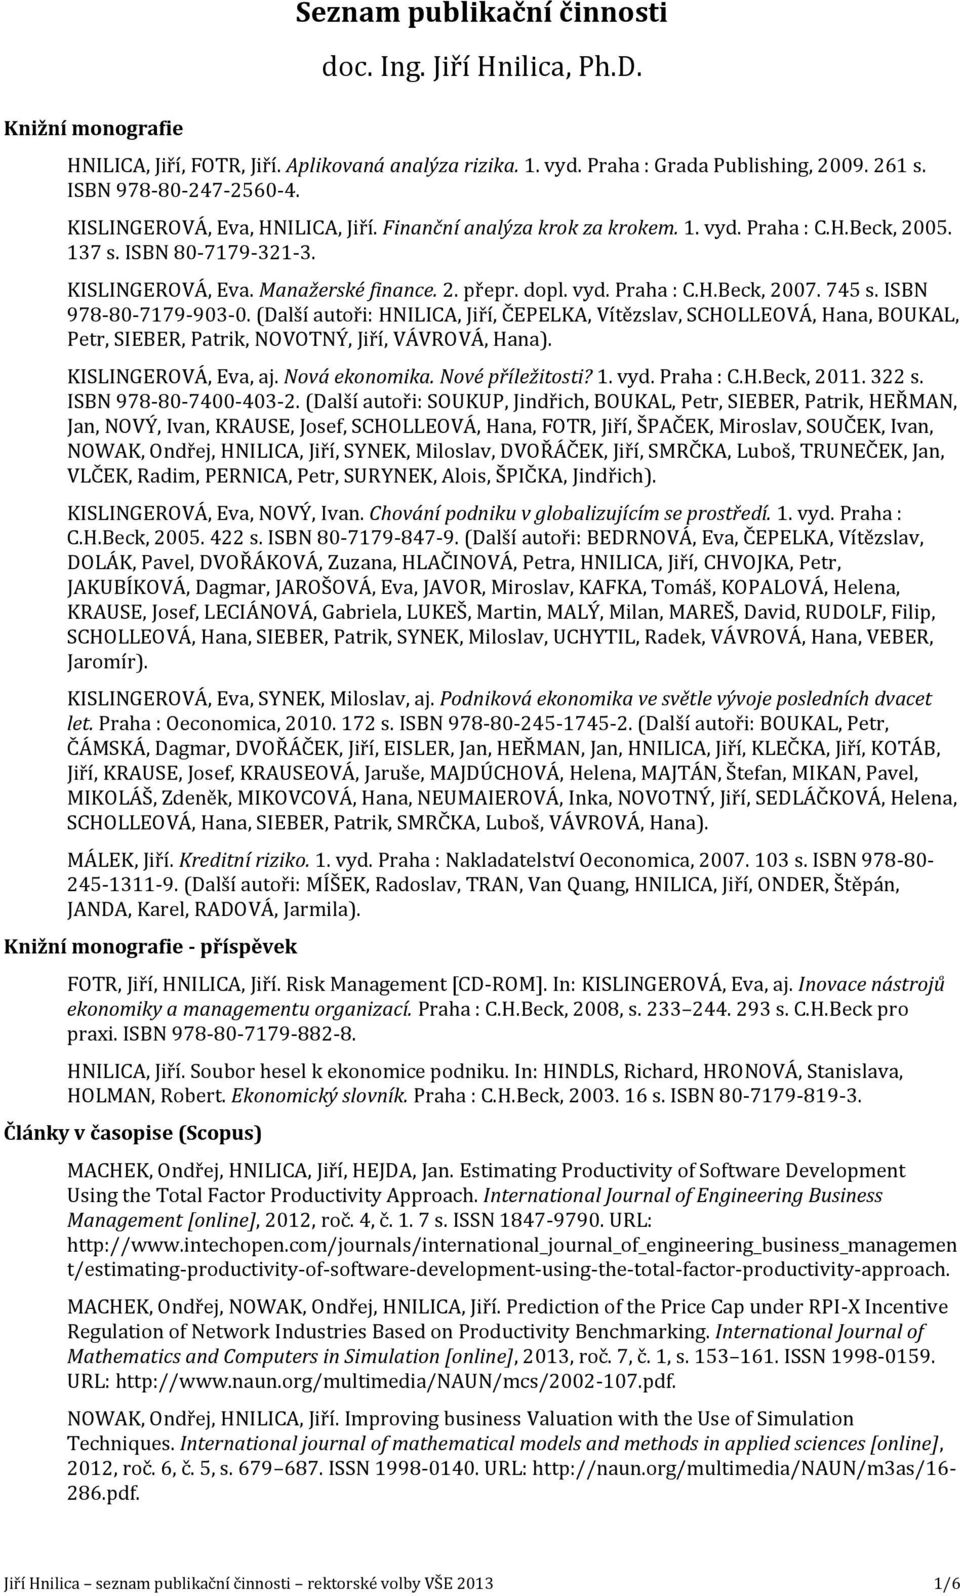 745 s. ISBN 978-80-7179-903-0. (Další autoři: HNILICA, Jiří, ČEPELKA, Vítězslav, SCHOLLEOVÁ, Hana, BOUKAL, Petr, SIEBER, Patrik, NOVOTNÝ, Jiří, VÁVROVÁ, Hana). KISLINGEROVÁ, Eva, aj. Nová ekonomika.